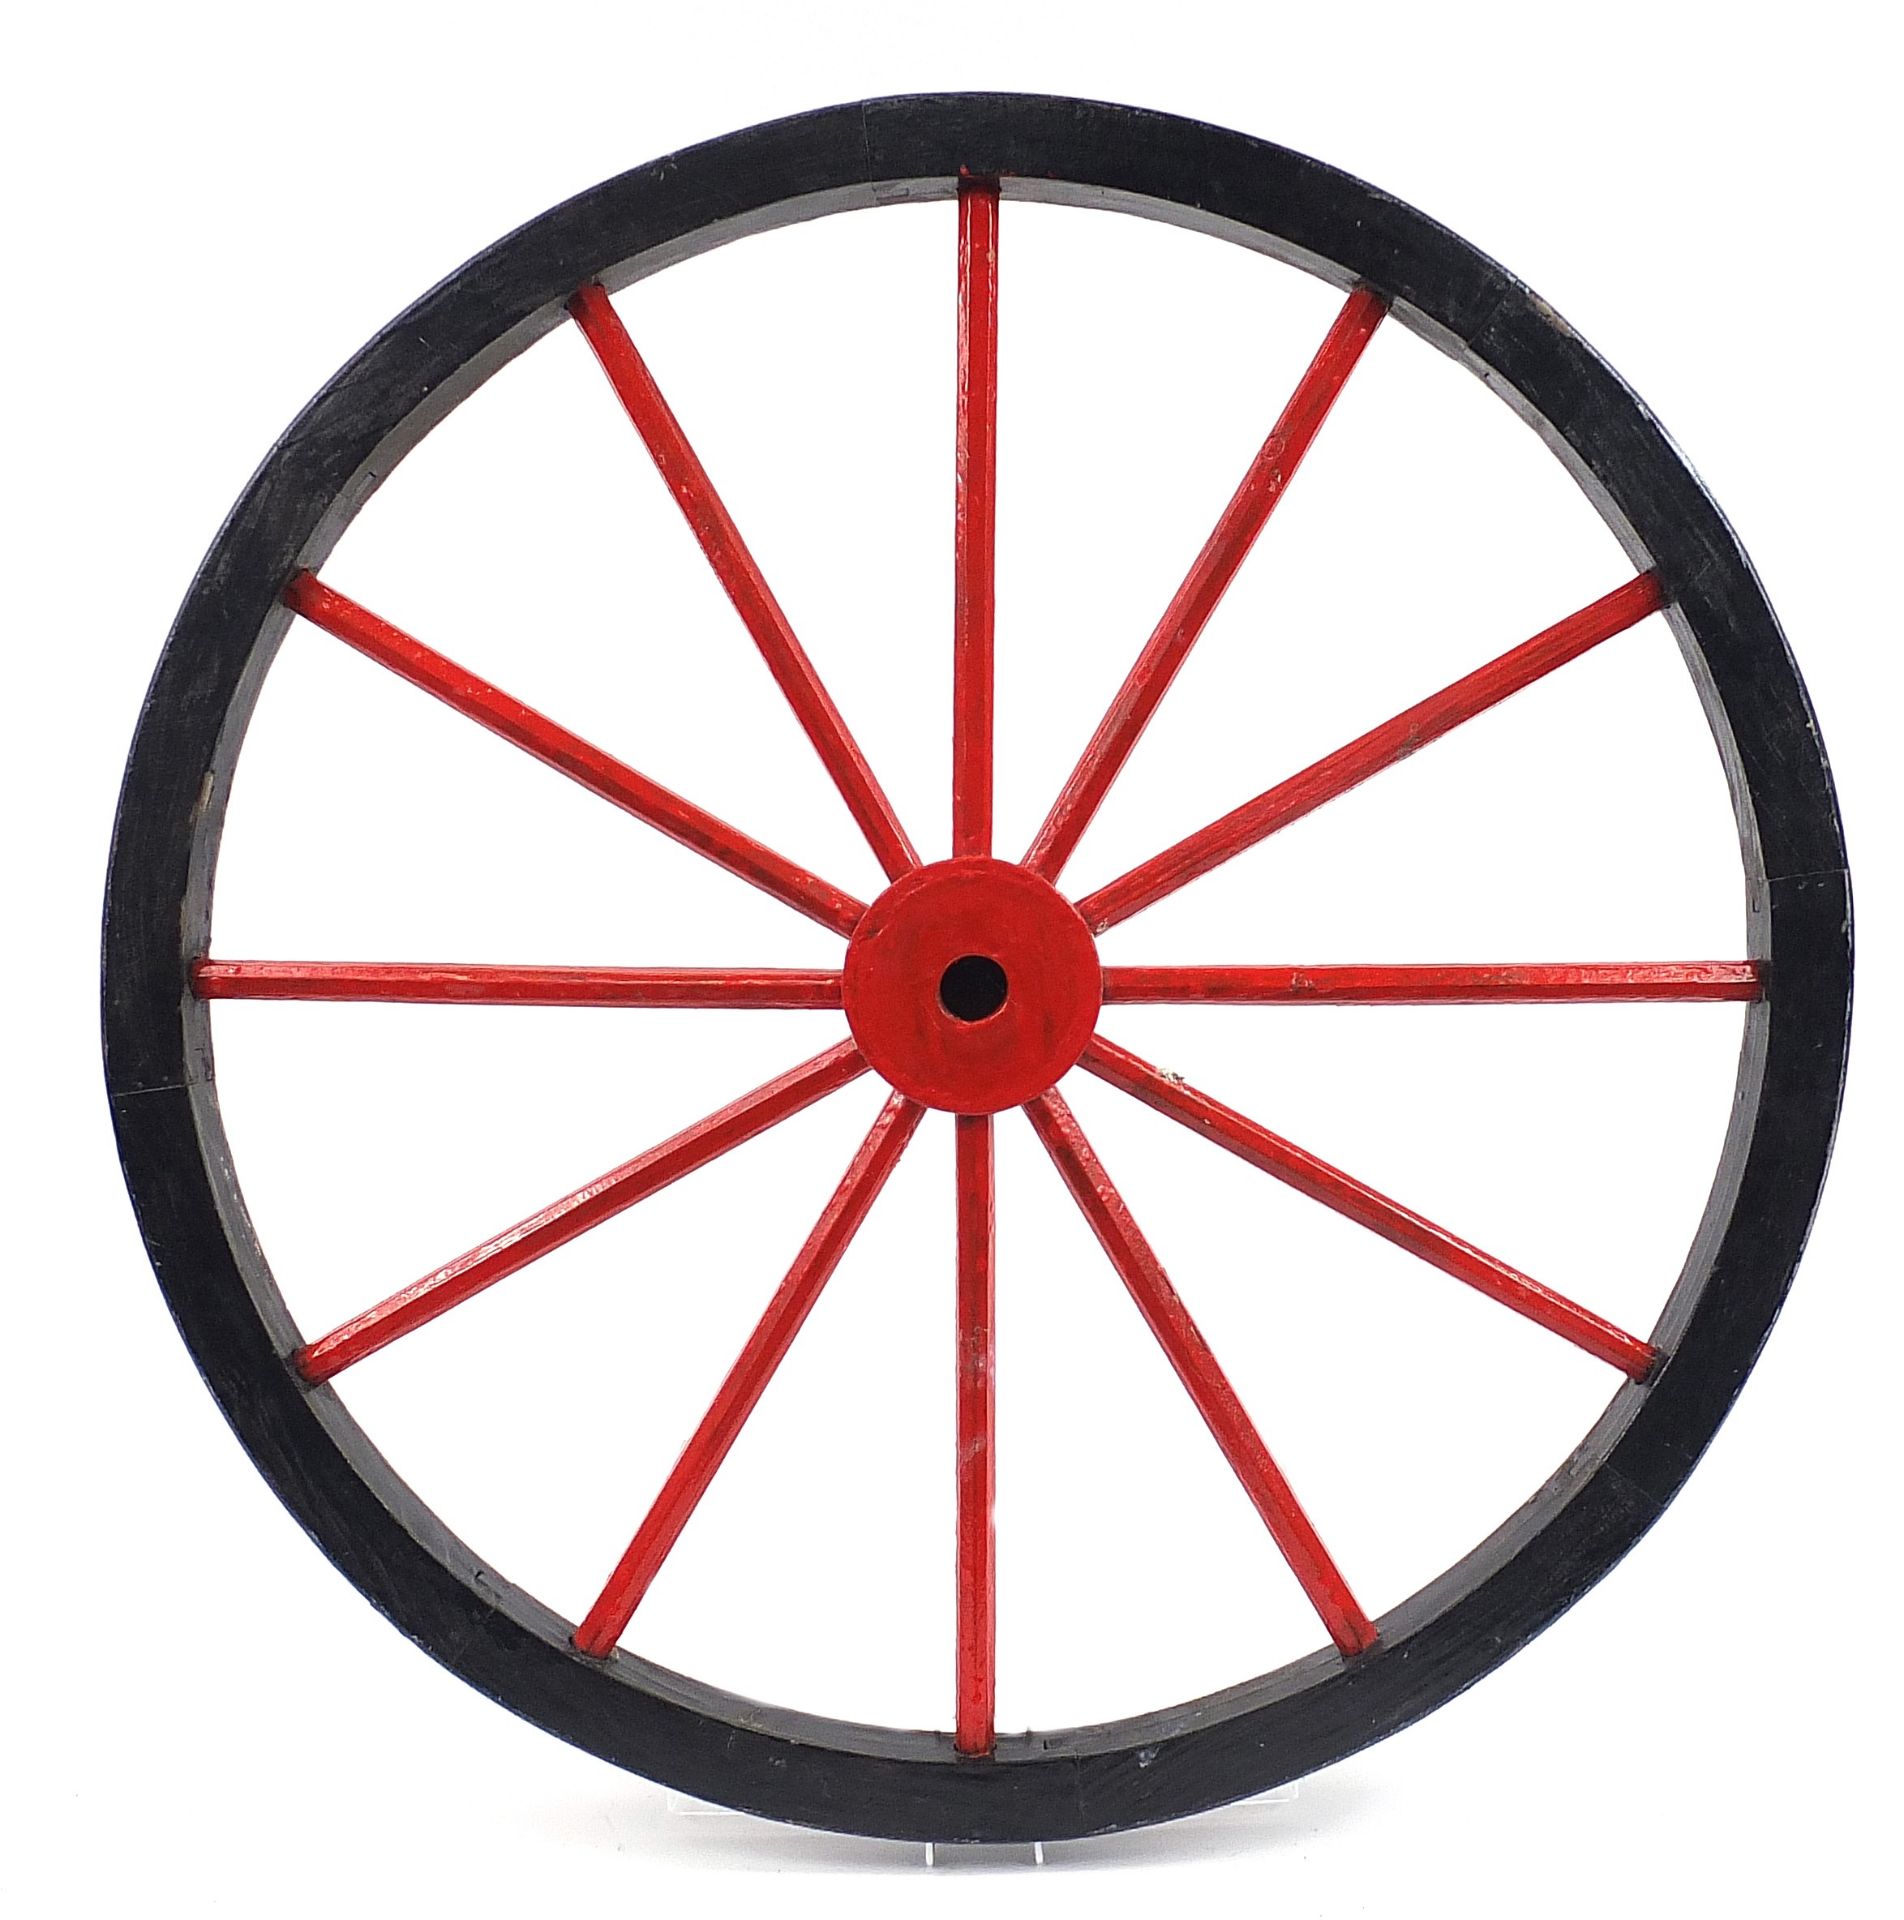 Antique wooden wheel, 80.5cm in diameter - Image 3 of 3